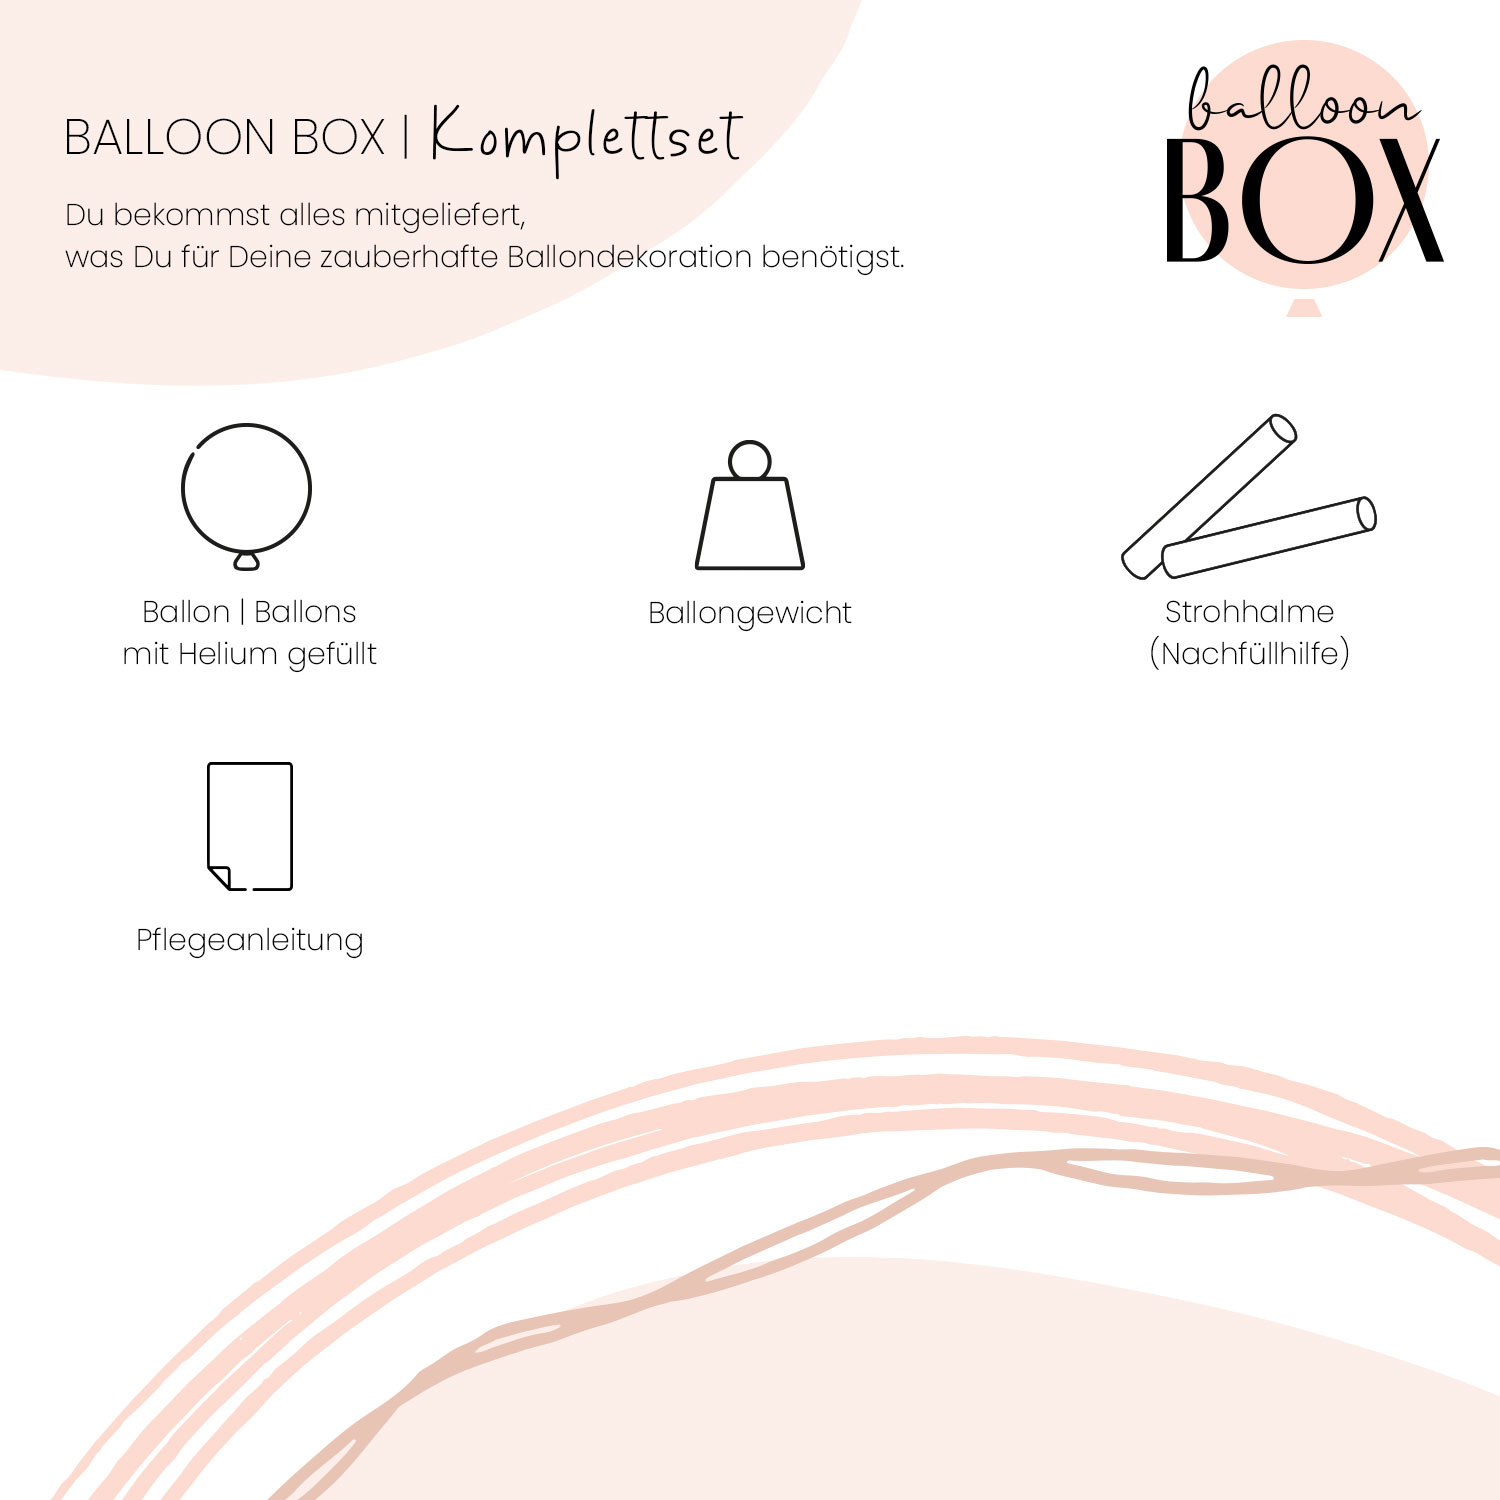 Heliumballon in a Box - Wuffi Birthday